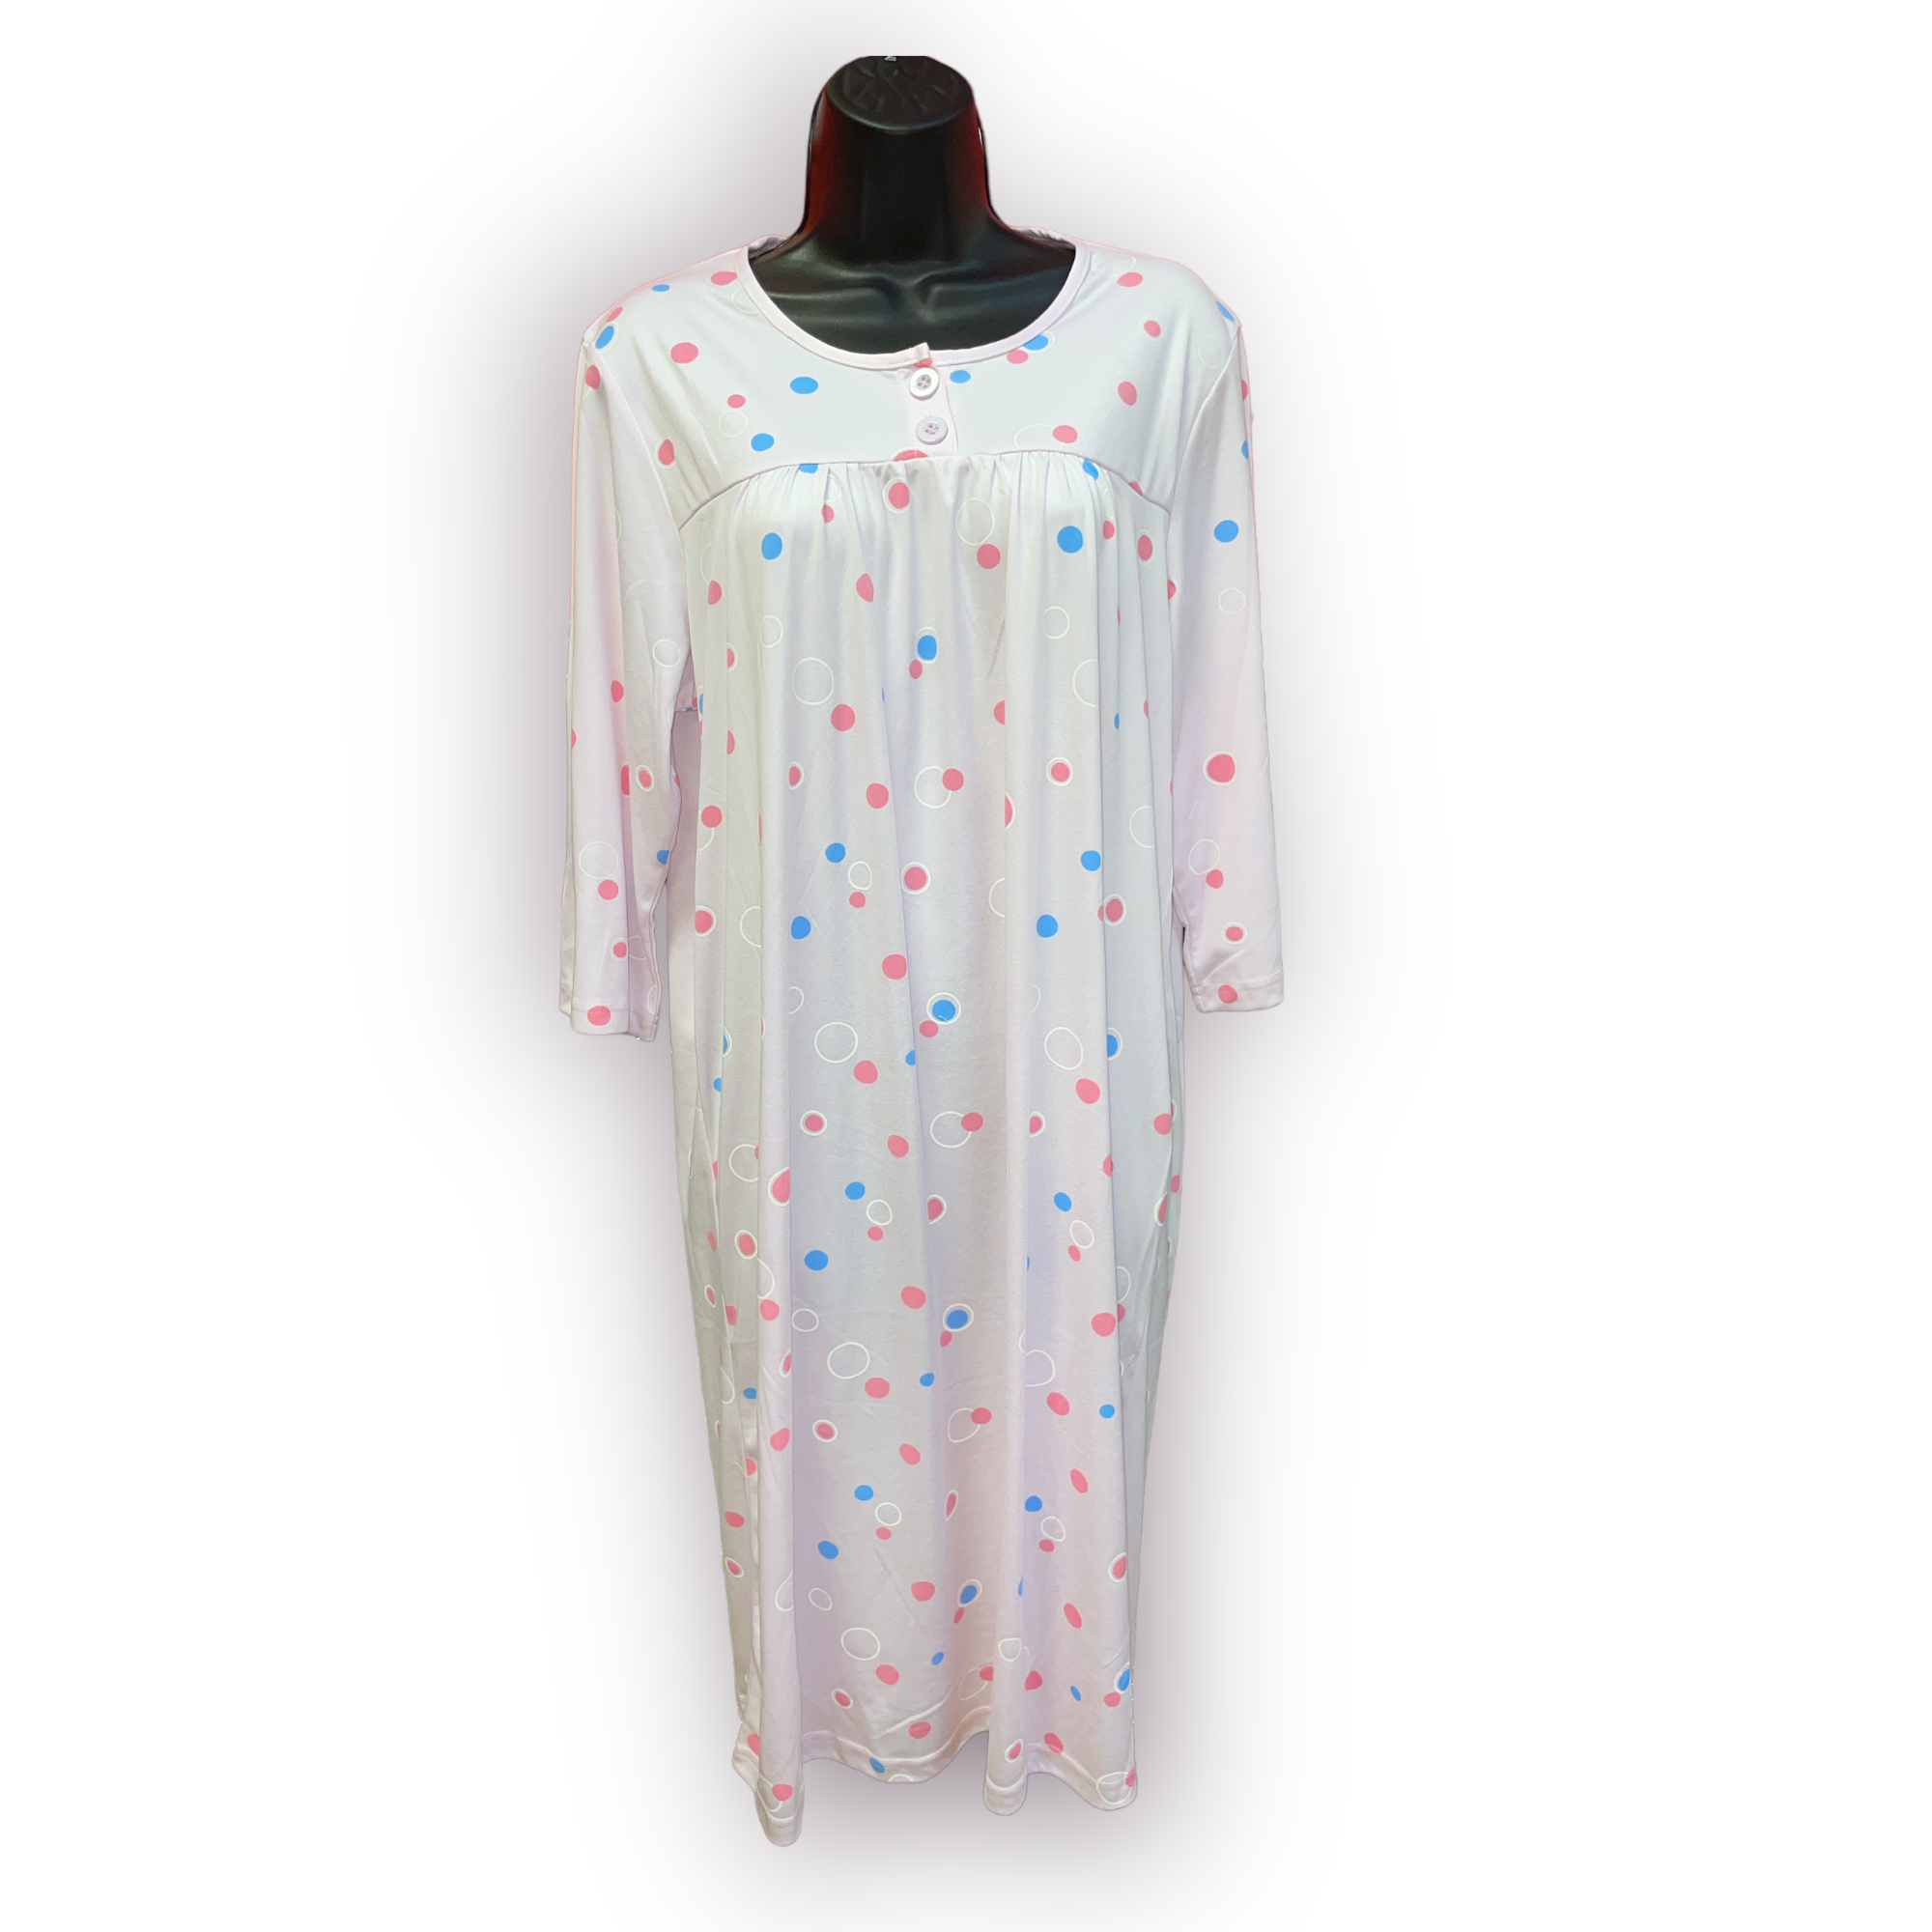 Women's Micro Fibre Nightgown